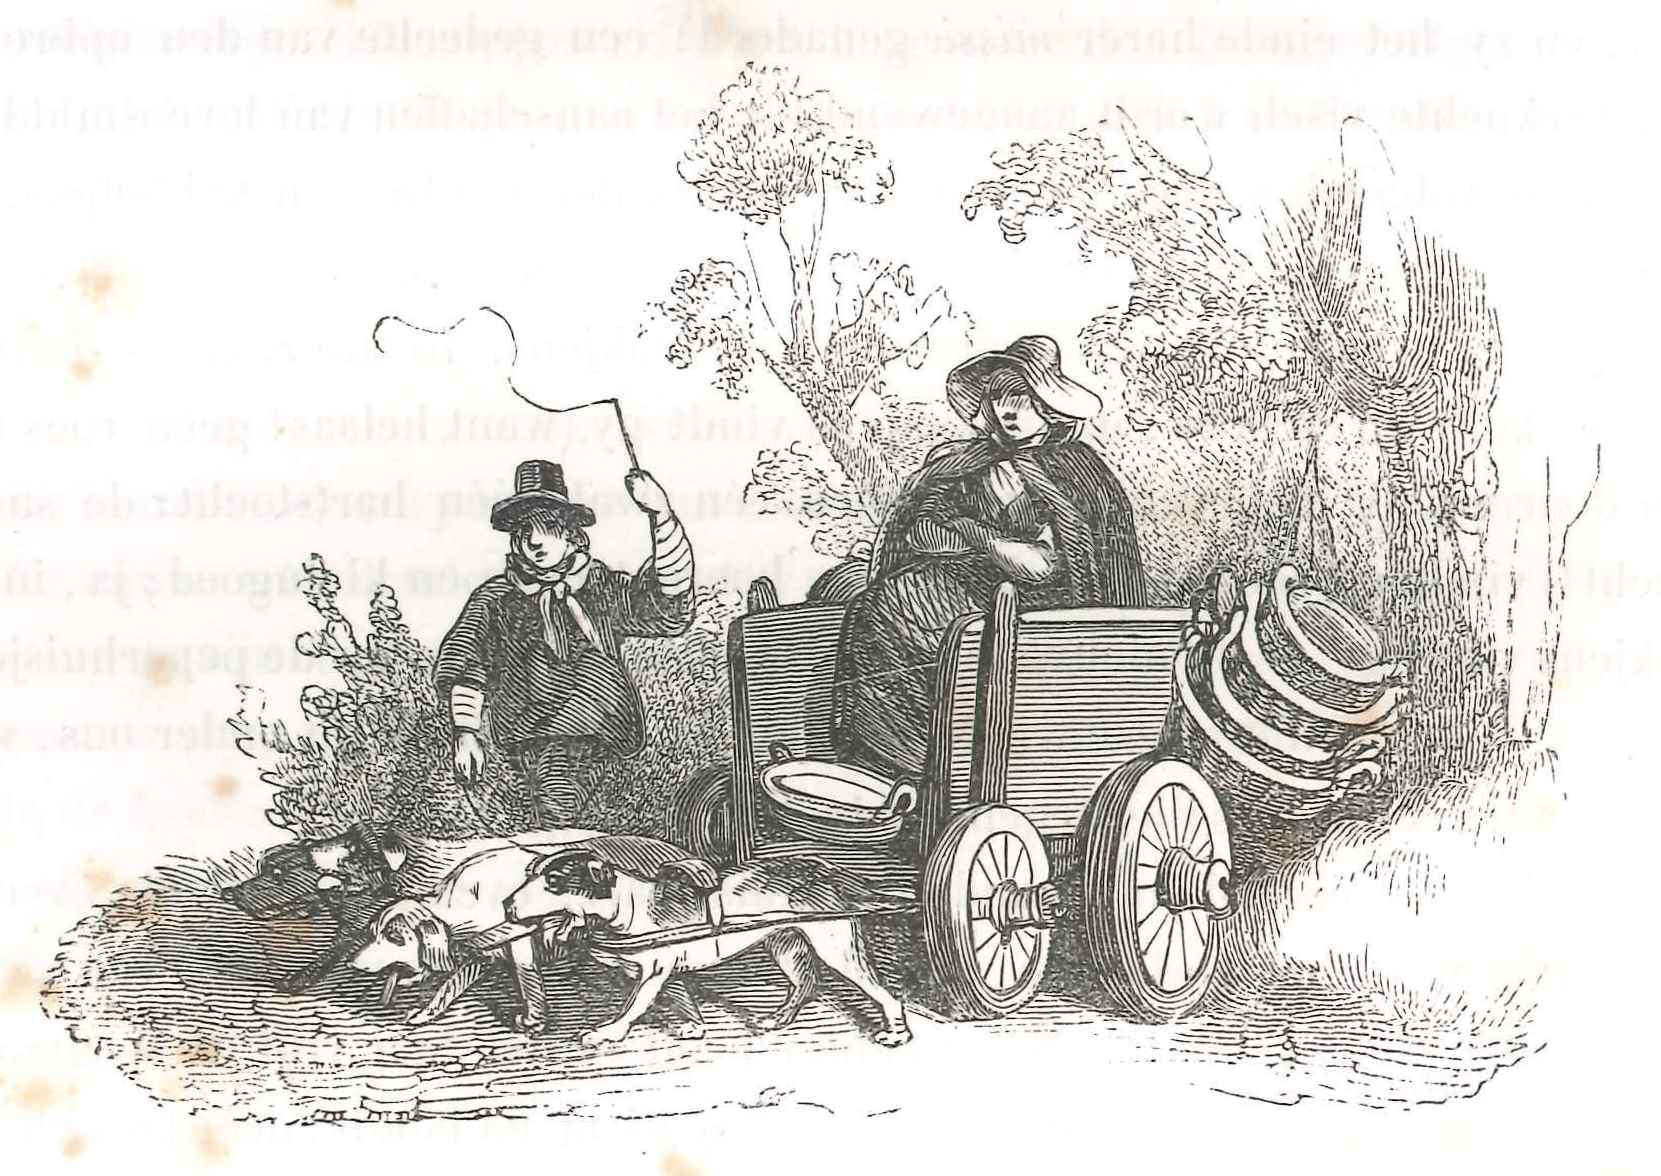 Een visleurster uit Scheveningen op weg met een hondenkar, 'Karakterschets', 1841.